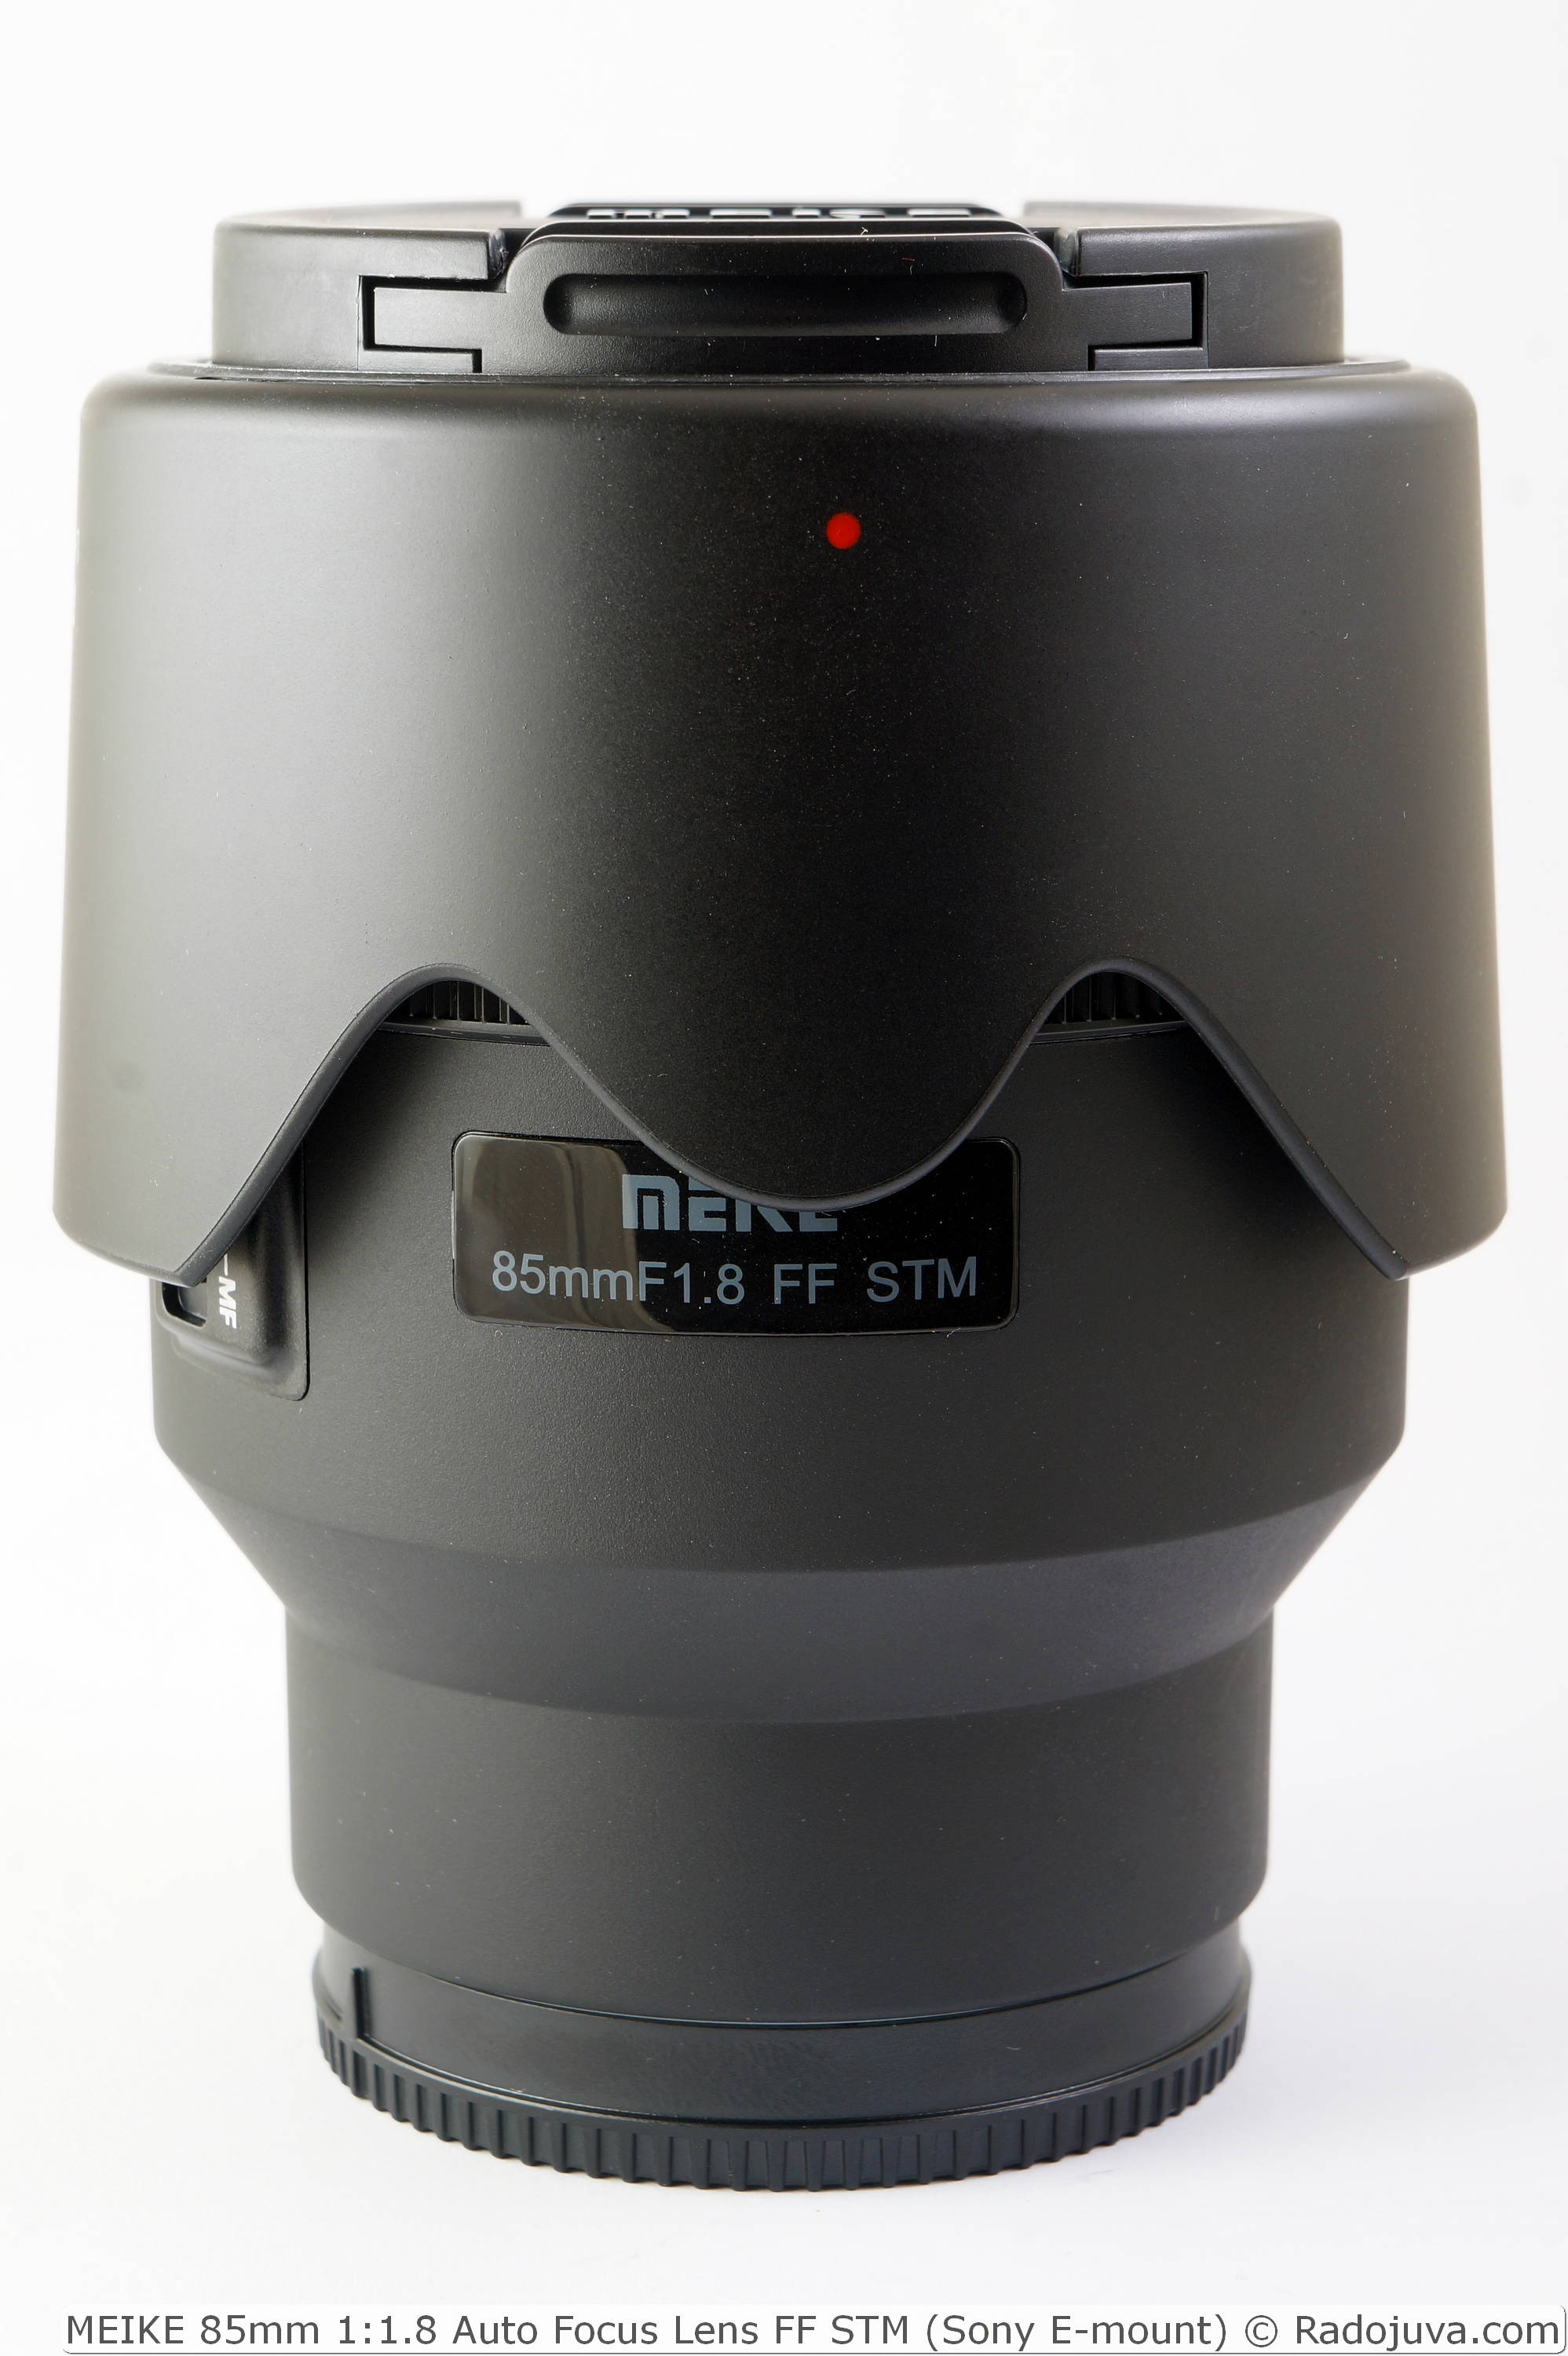 MEIKE 85mm 1:1.8 Auto Focus Lens FF STM